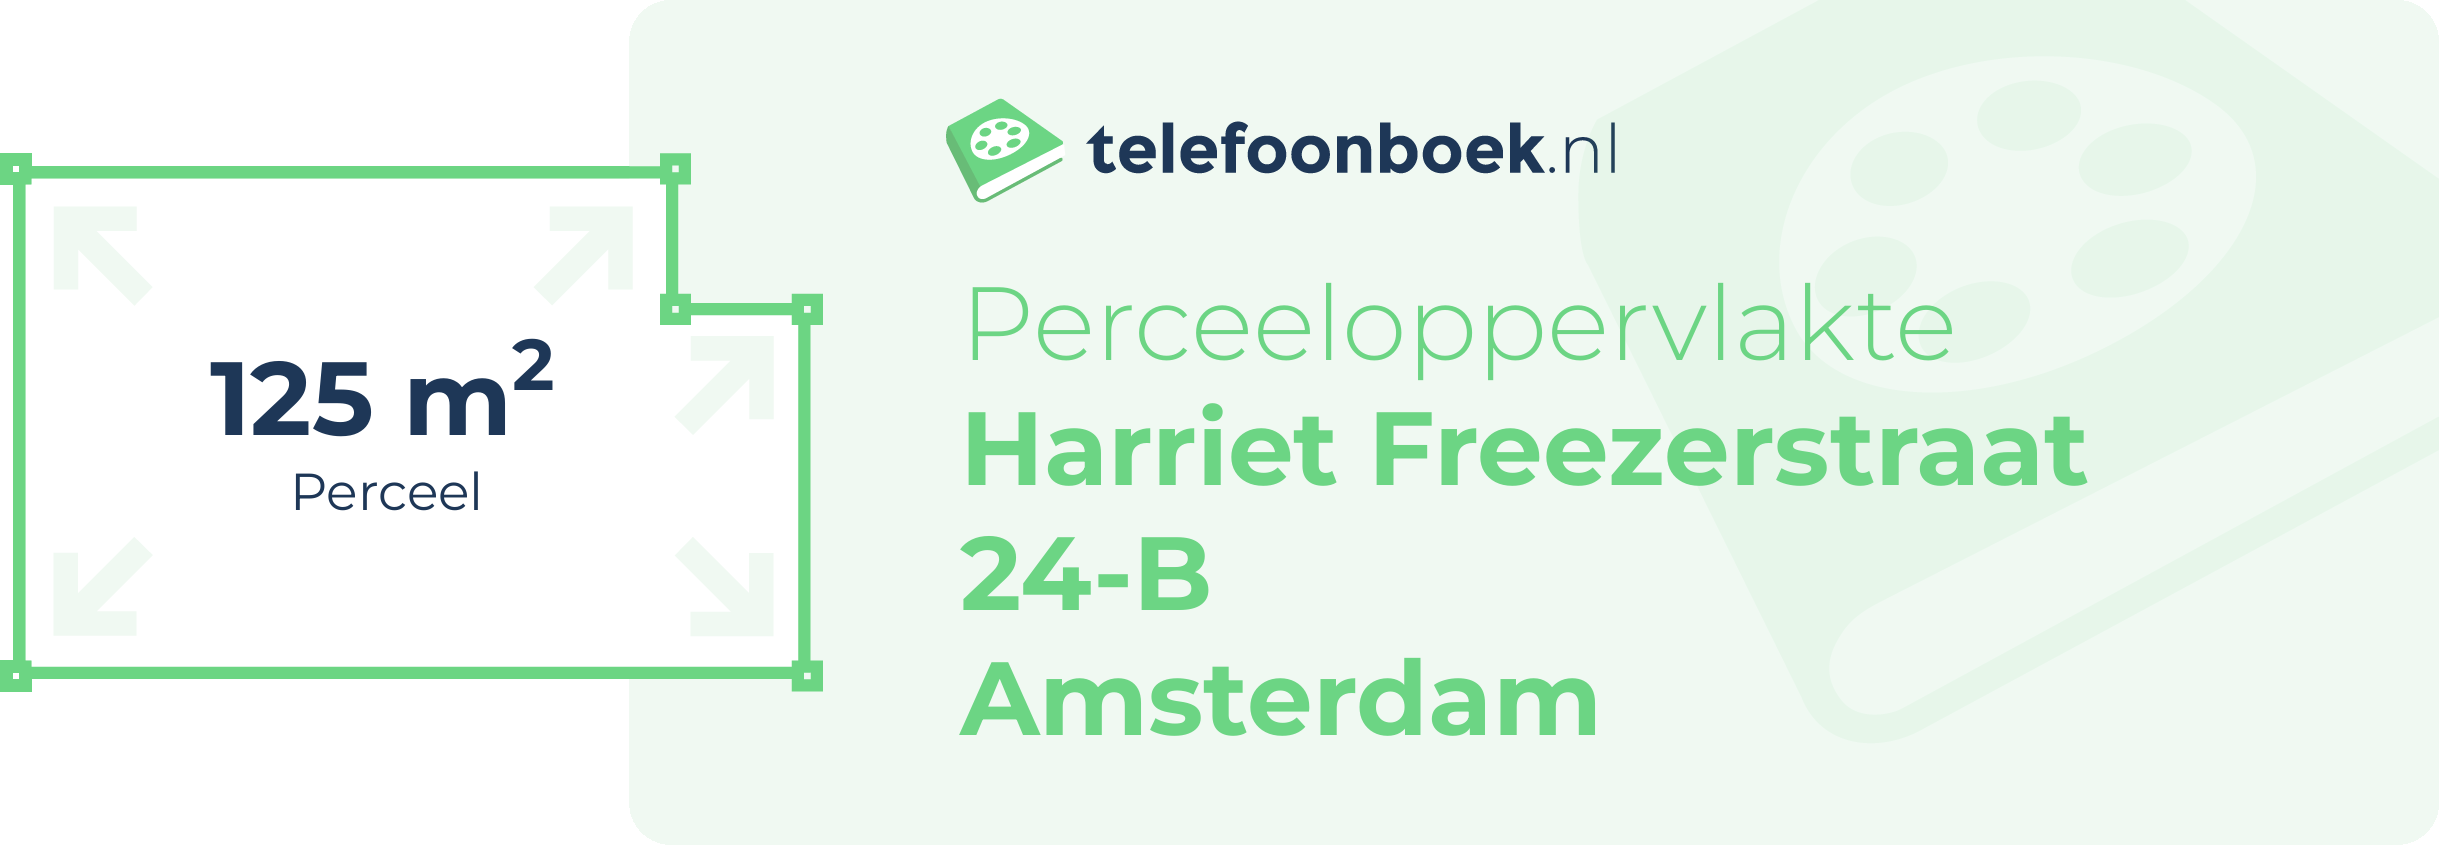 Perceeloppervlakte Harriet Freezerstraat 24-B Amsterdam